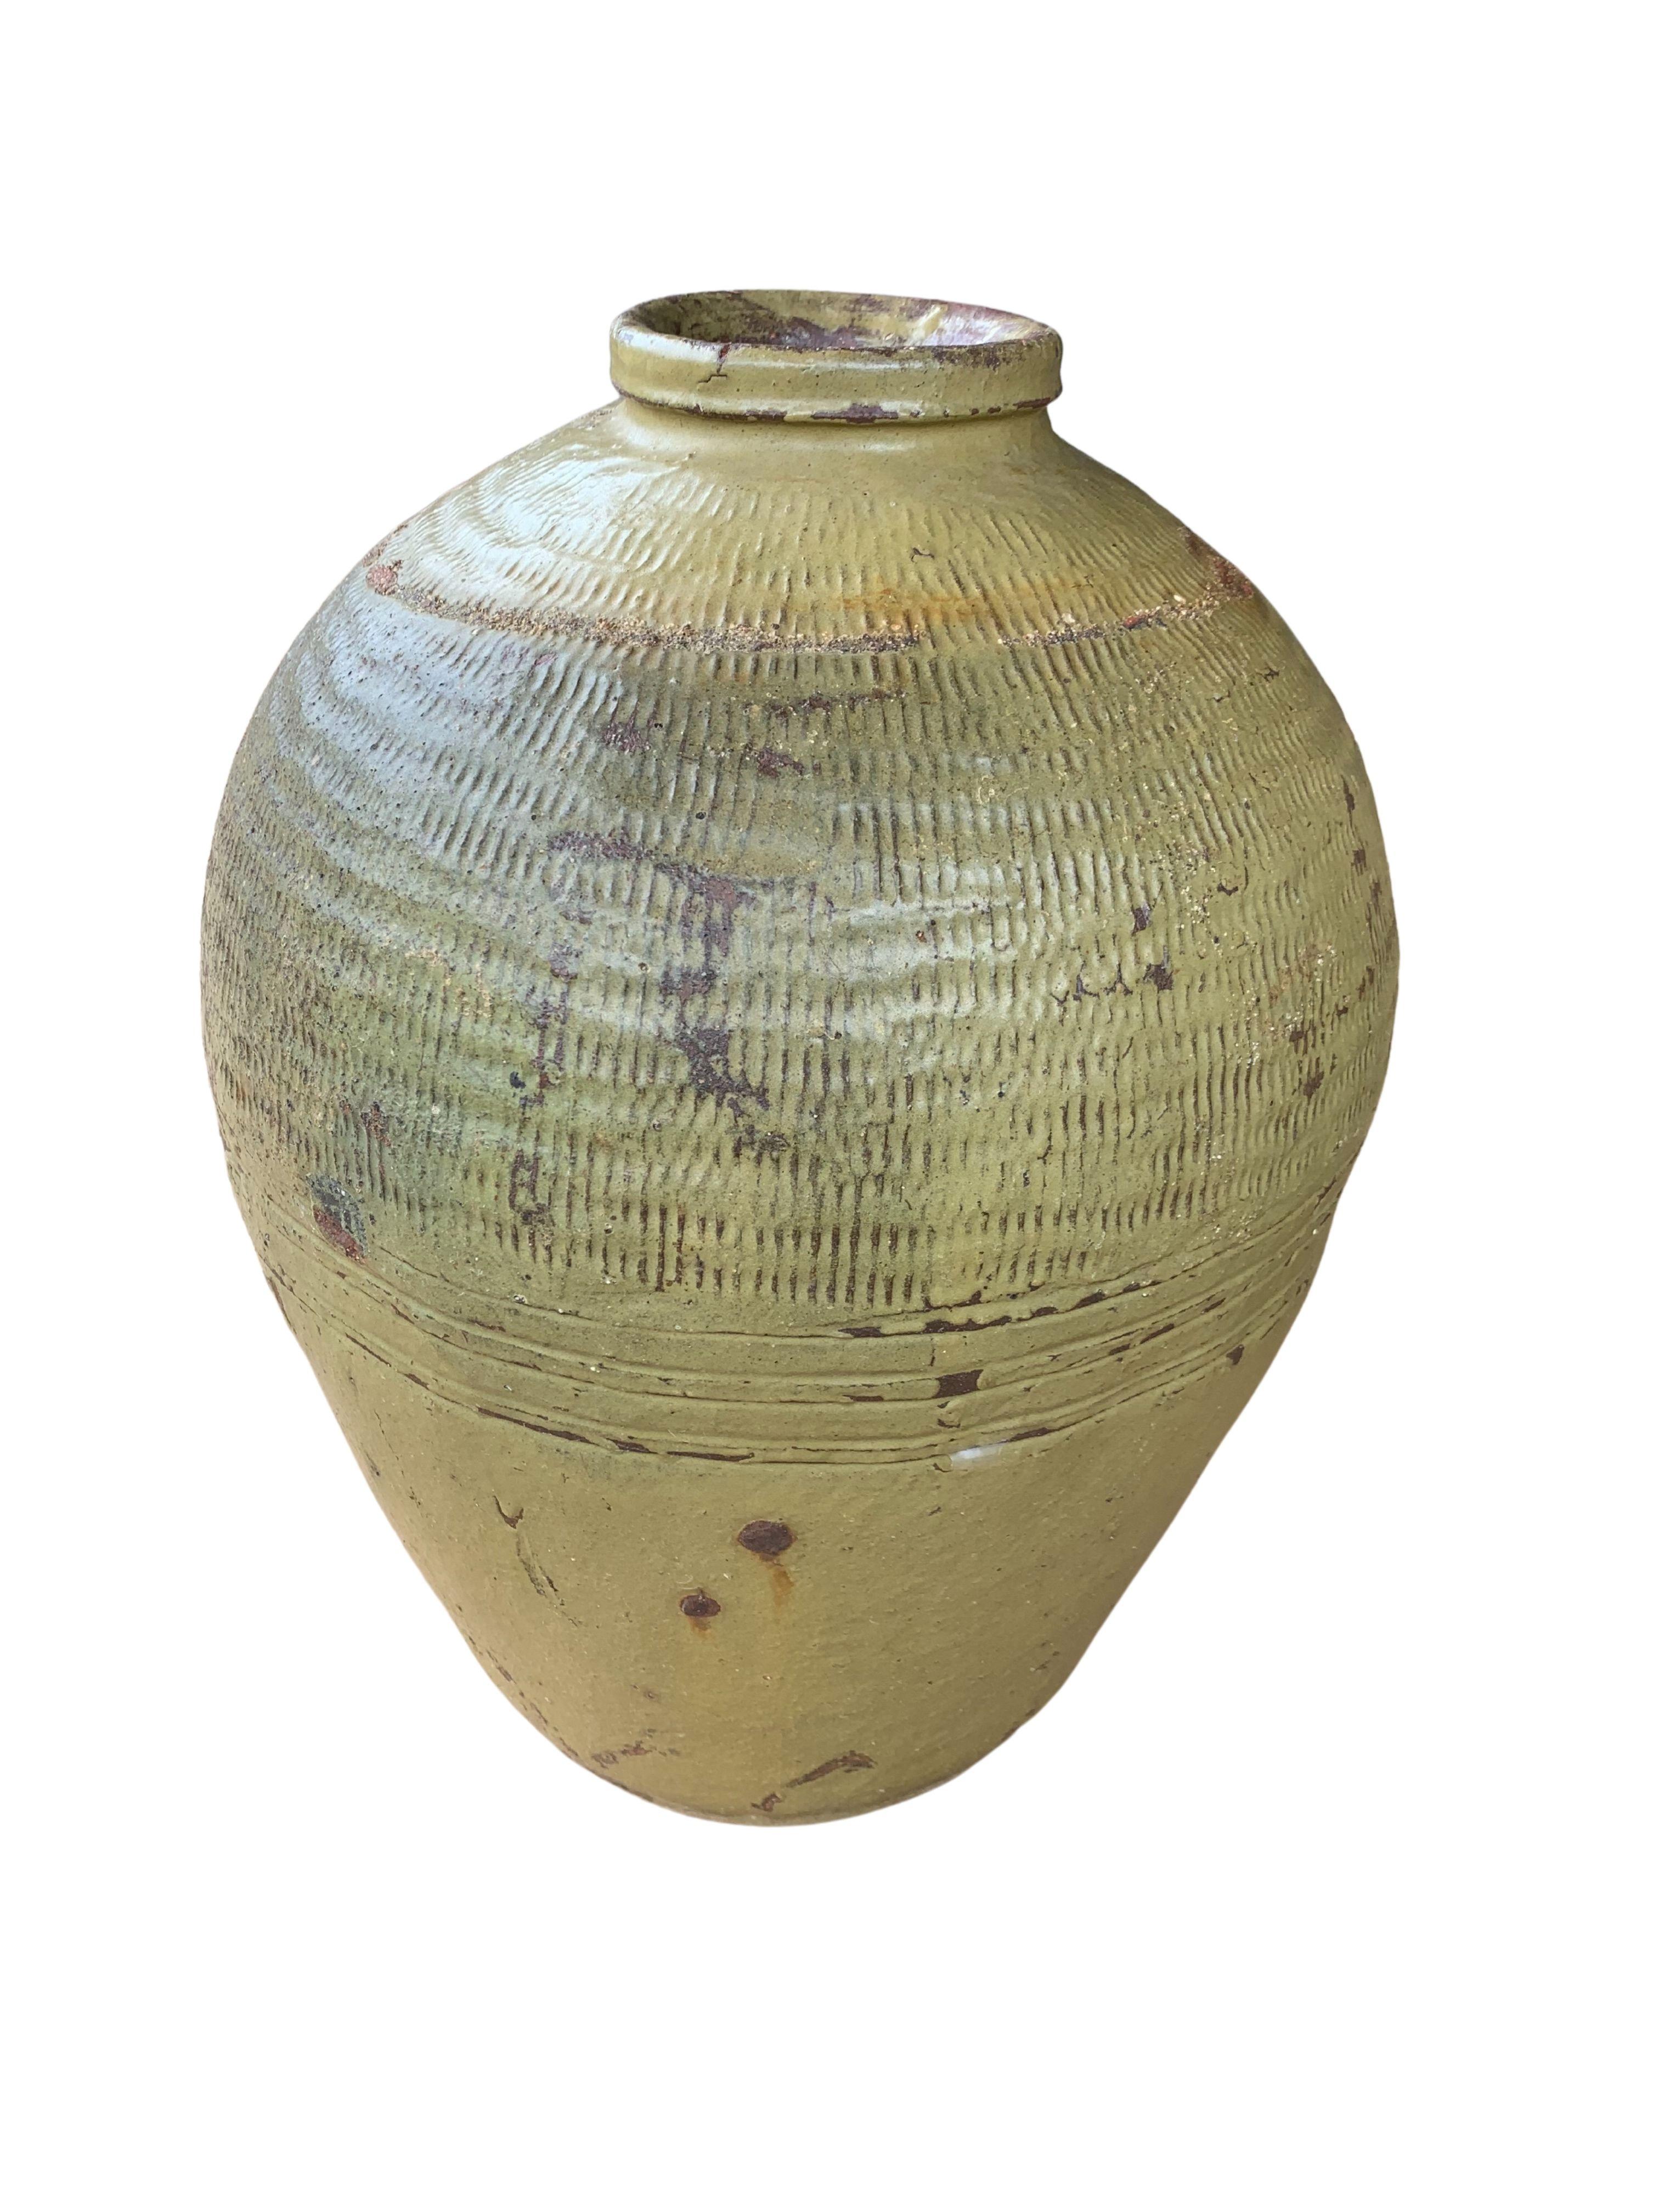 Glazed Antique Chinese Ceramic Pickling Jar Set Jade Green, c. 1900 For Sale